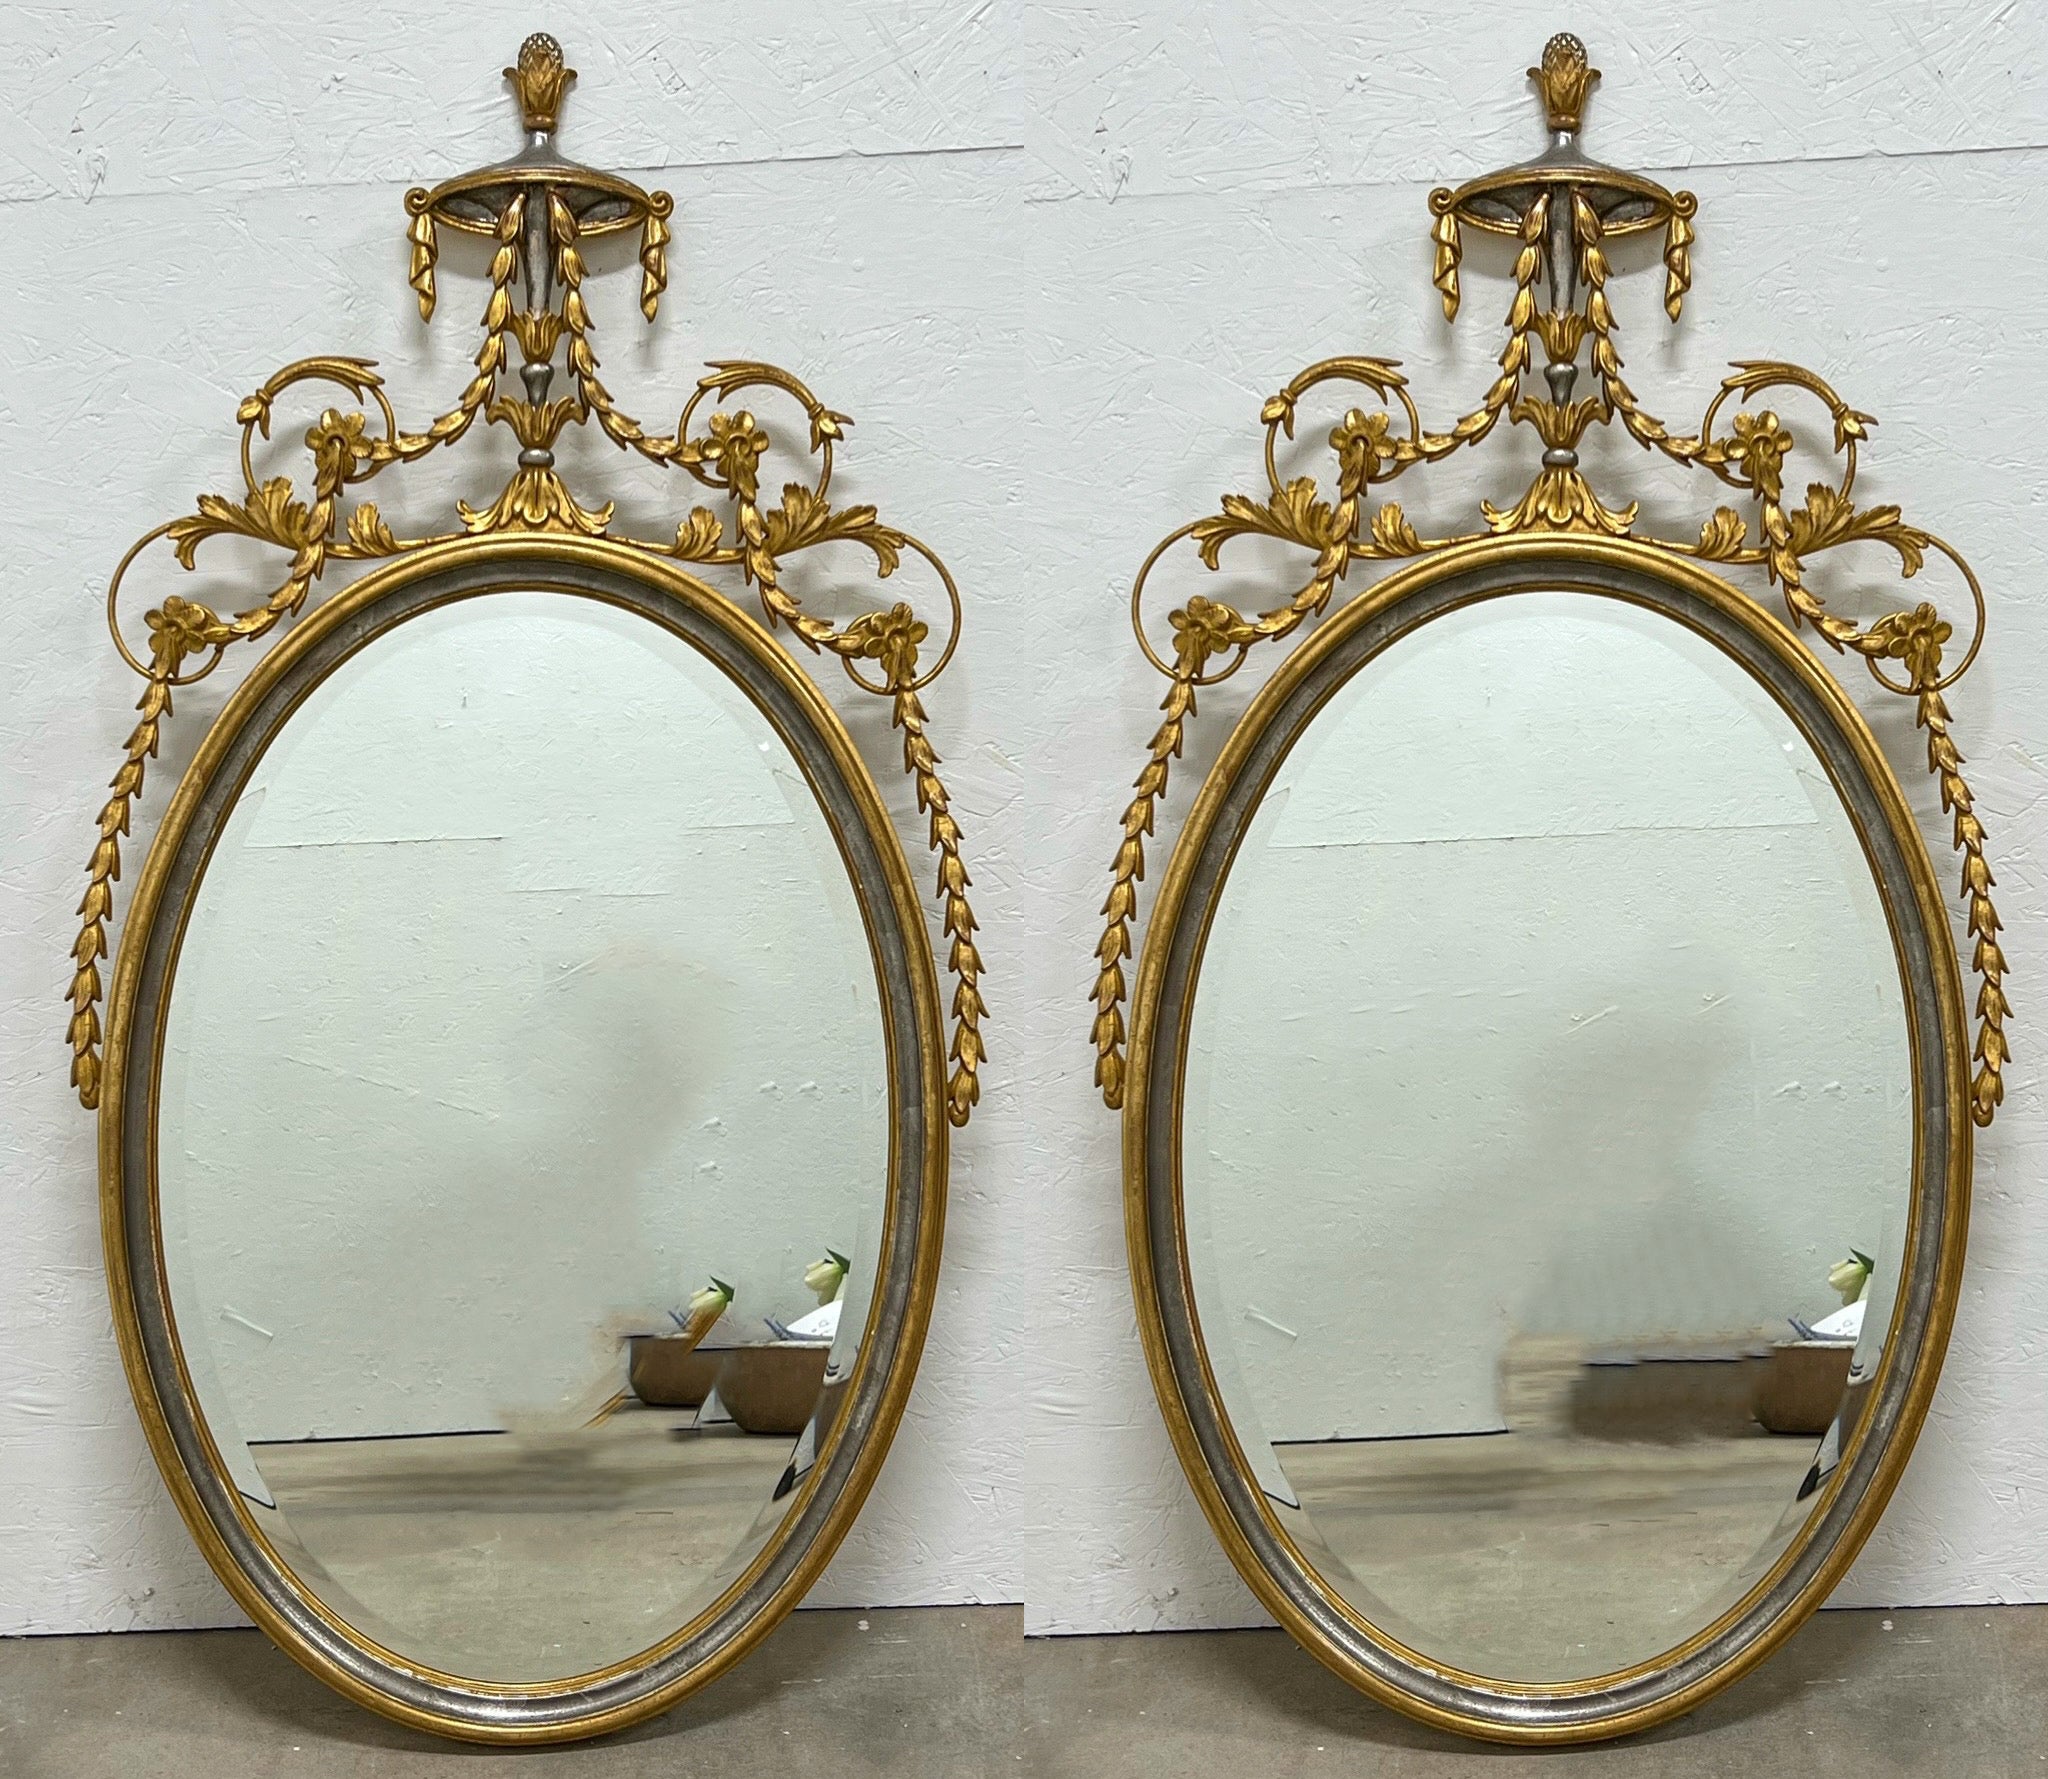 Ils sont intemporels ! Il s'agit d'une paire de miroirs italiens sculptés en argent et or de style Adams attribués aux frères Friedman. Ils sont en très bon état.